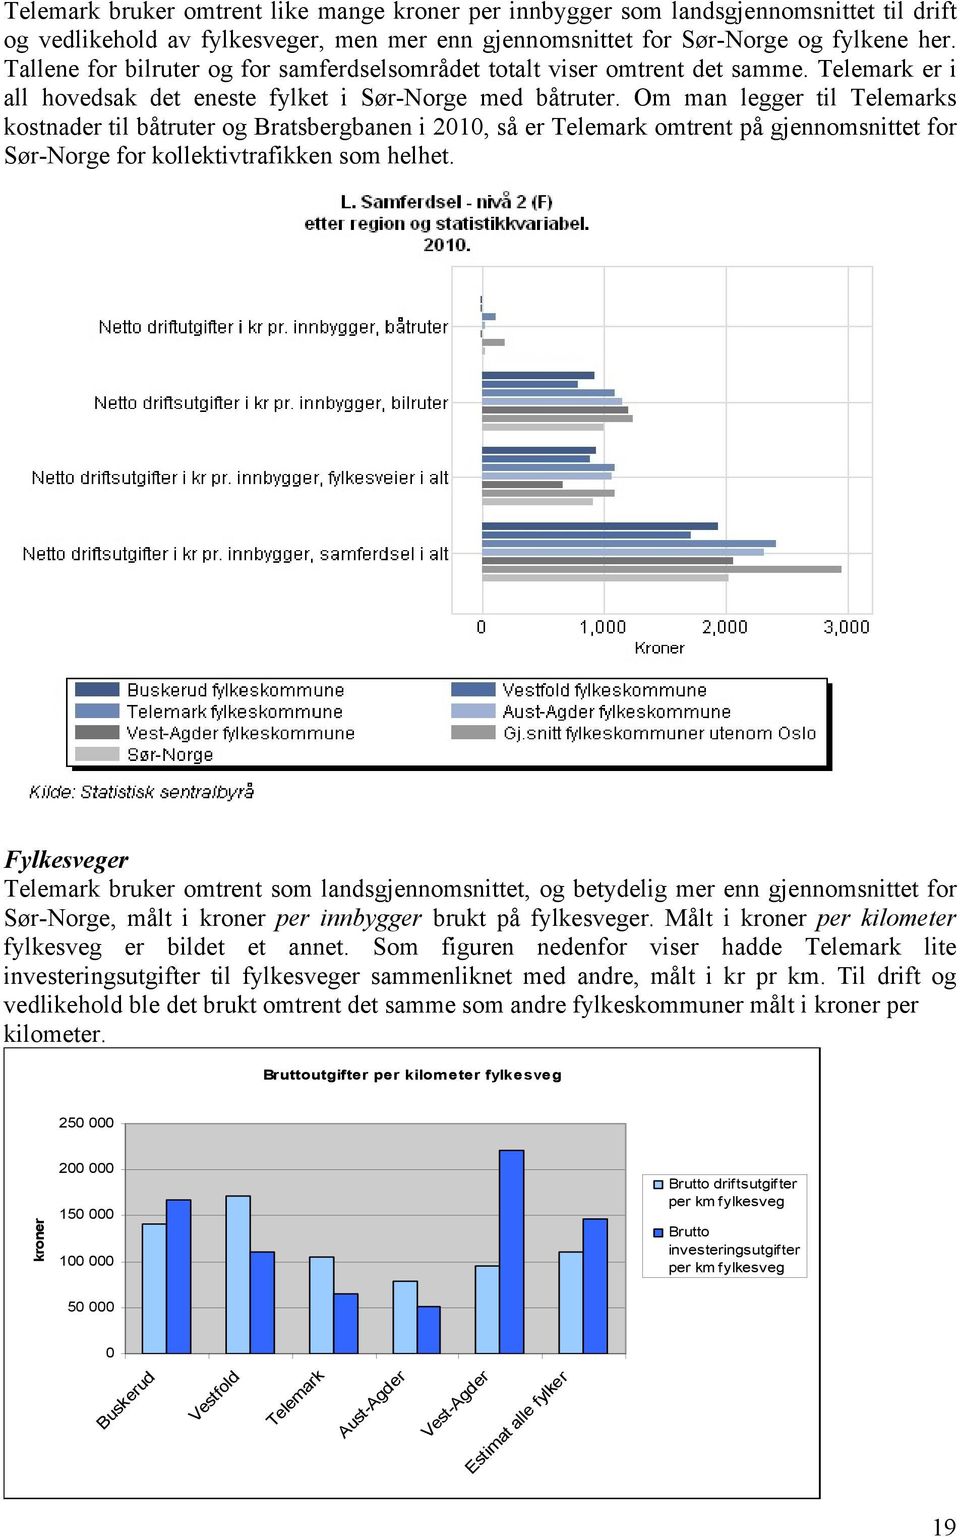 Om man legger til Telemarks kostnader til båtruter og Bratsbergbanen i 2010, så er Telemark omtrent på gjennomsnittet for Sør-Norge for kollektivtrafikken som helhet.